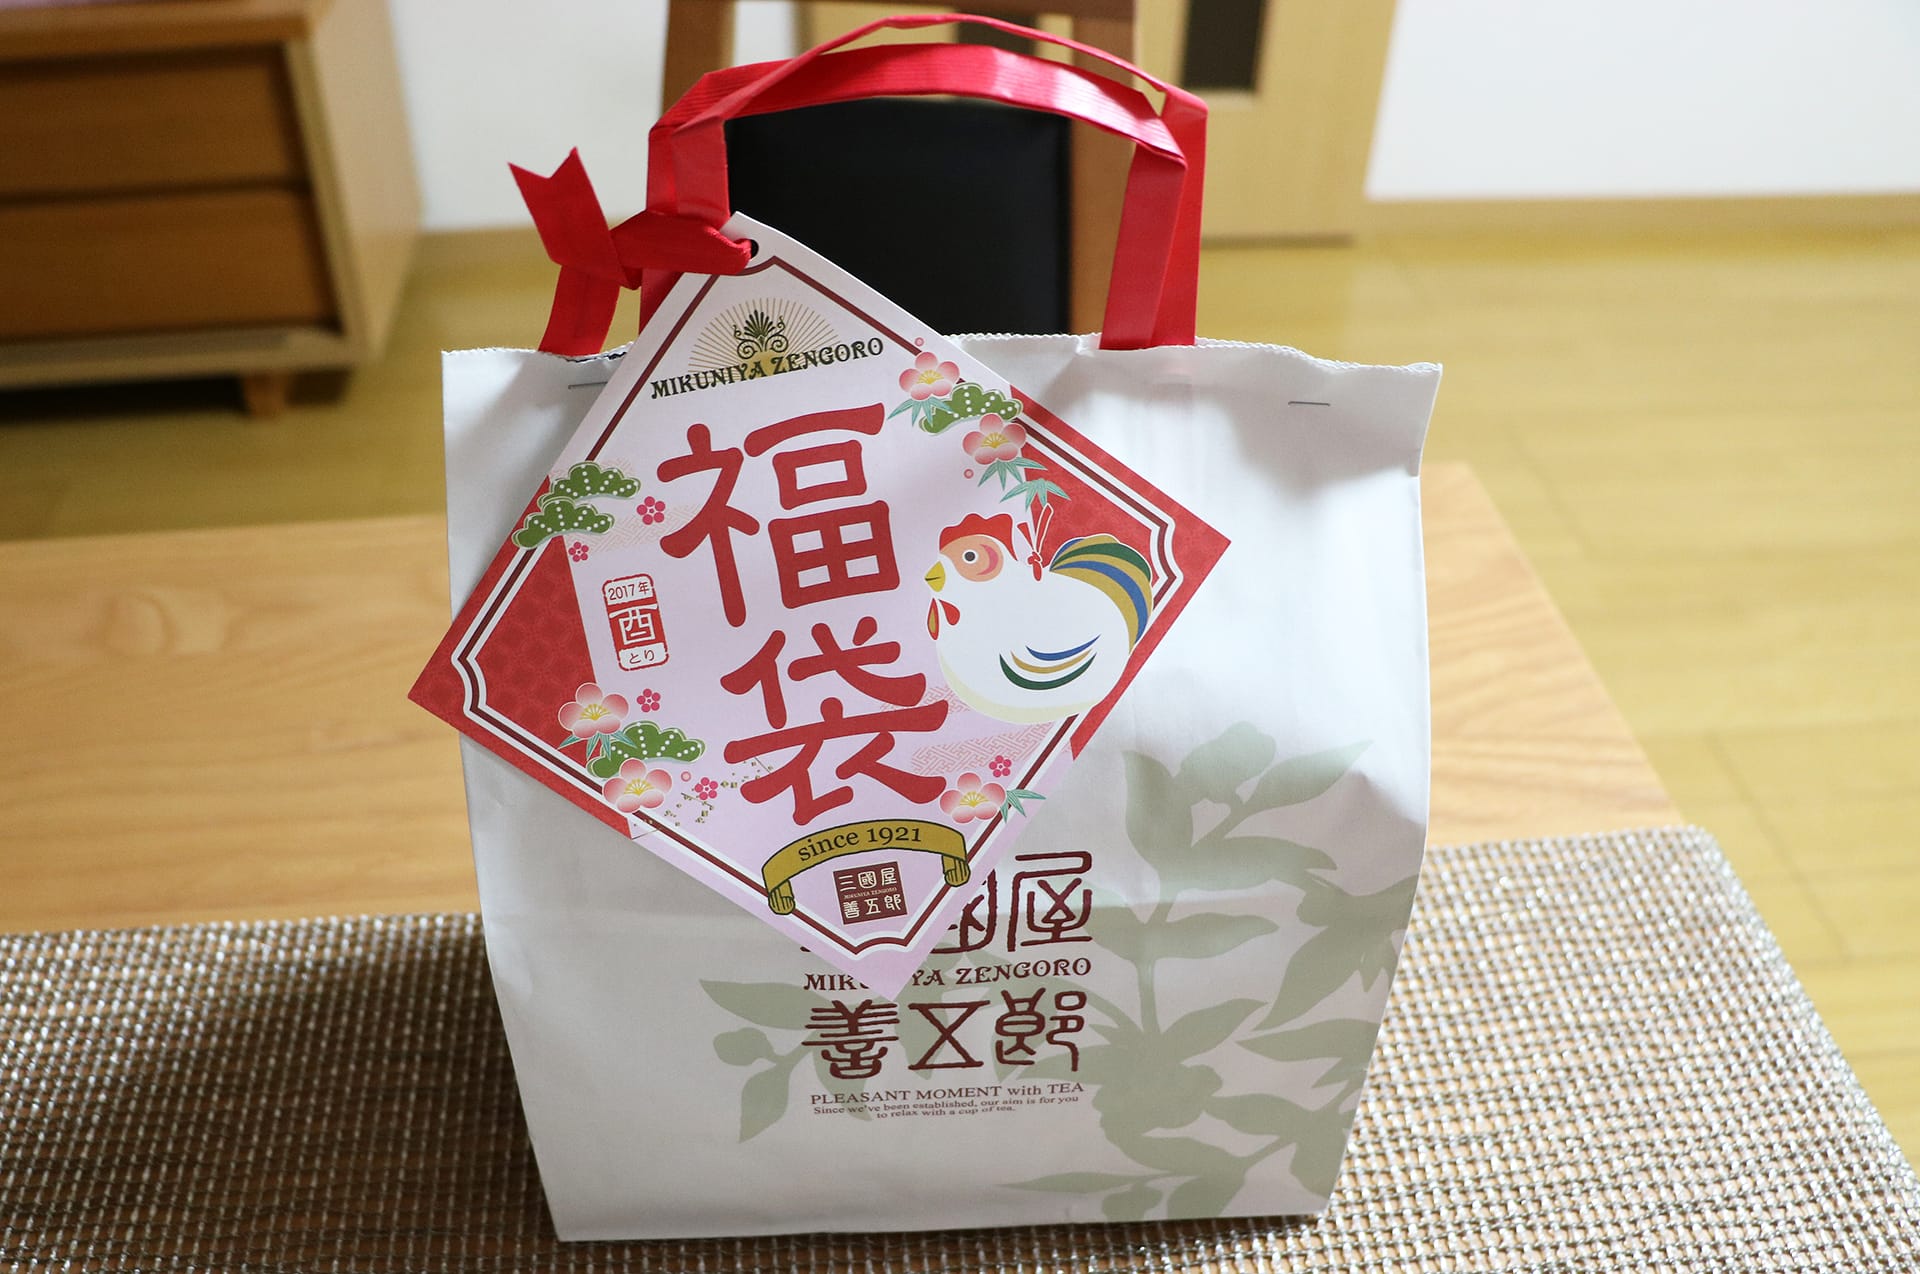 三國屋善五郎の2017年福袋が届きました。